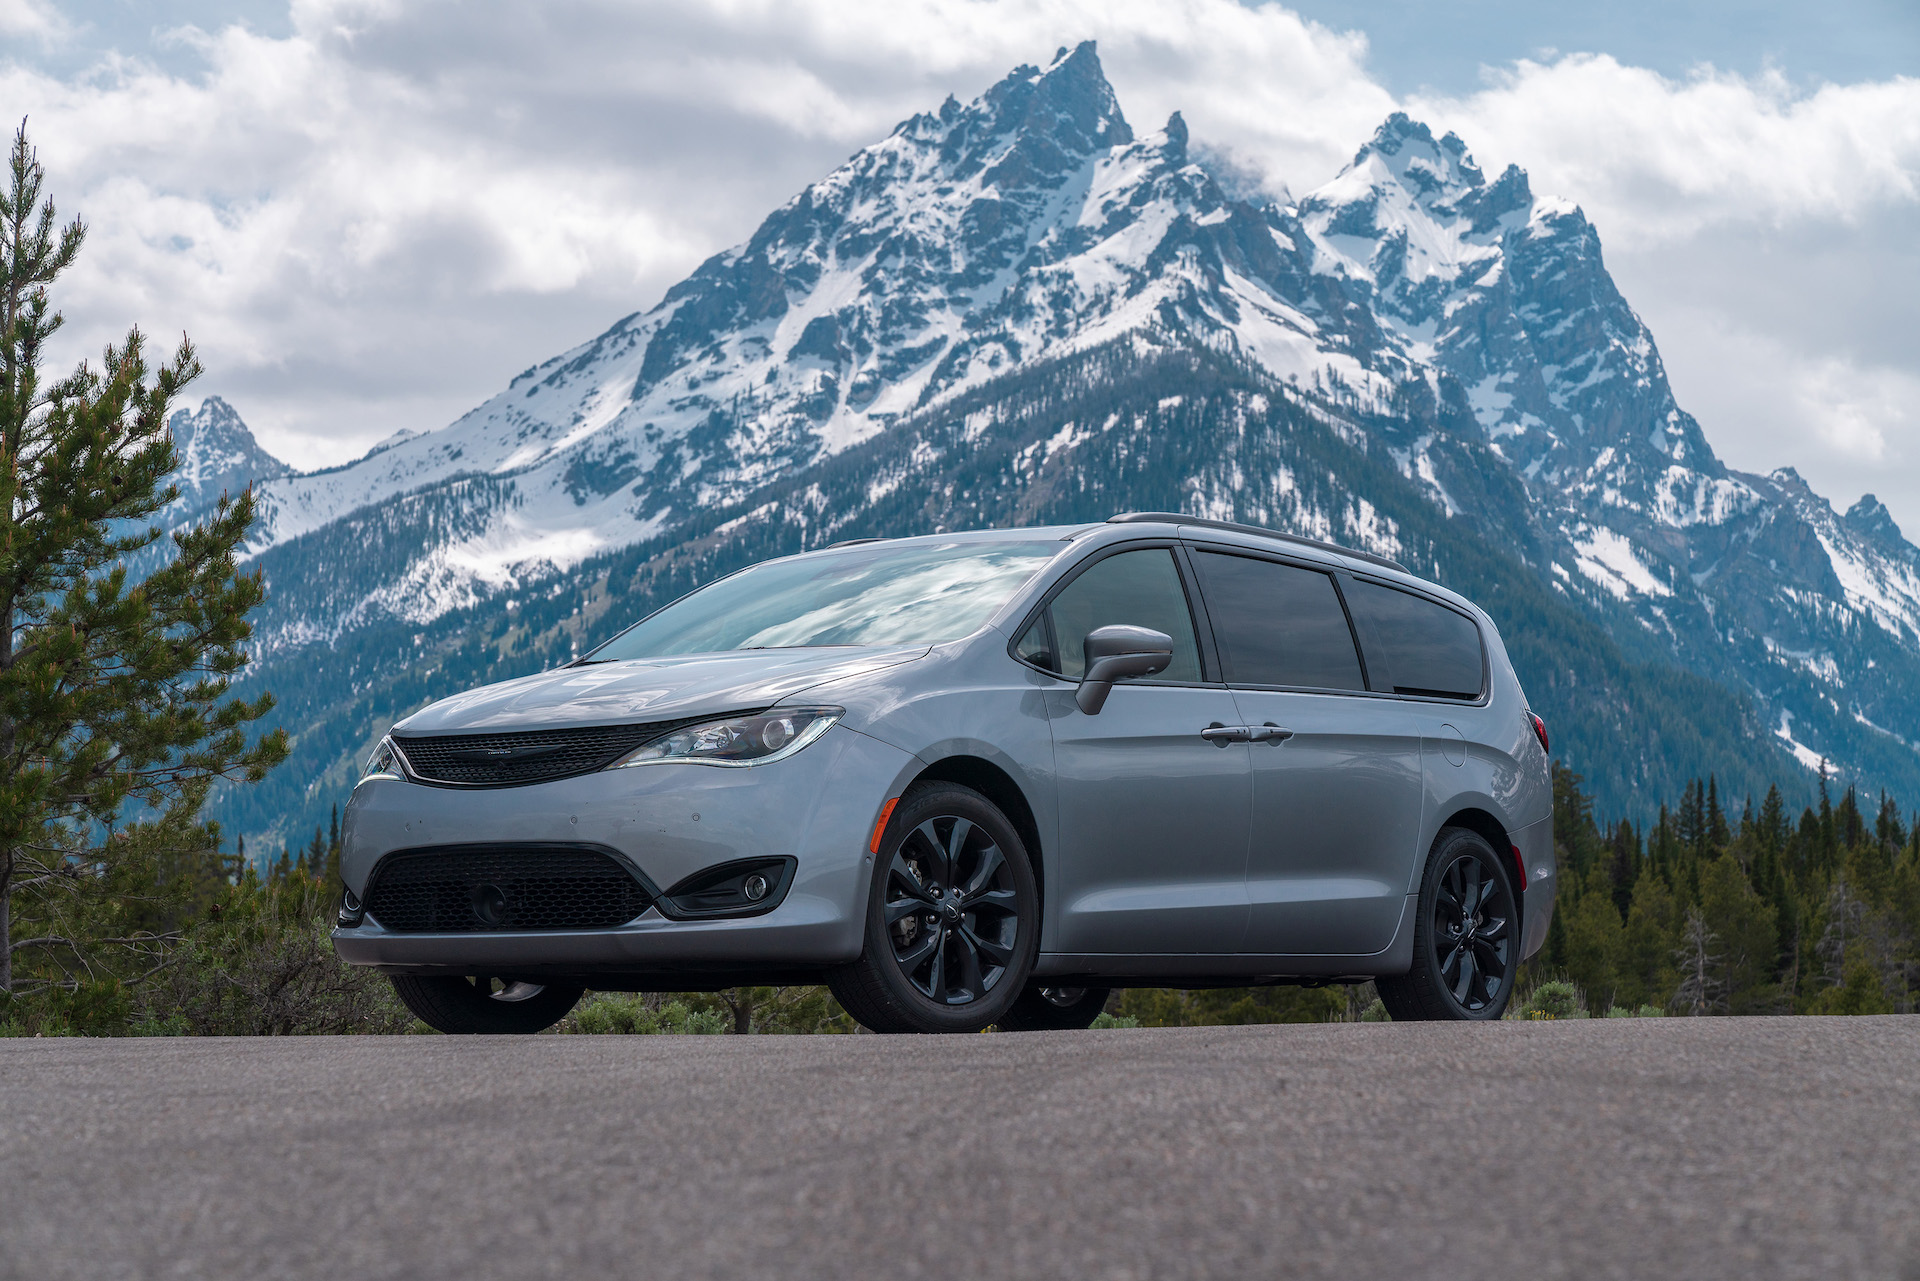 Chrysler Pacifica: Best Minivan To Buy 2020